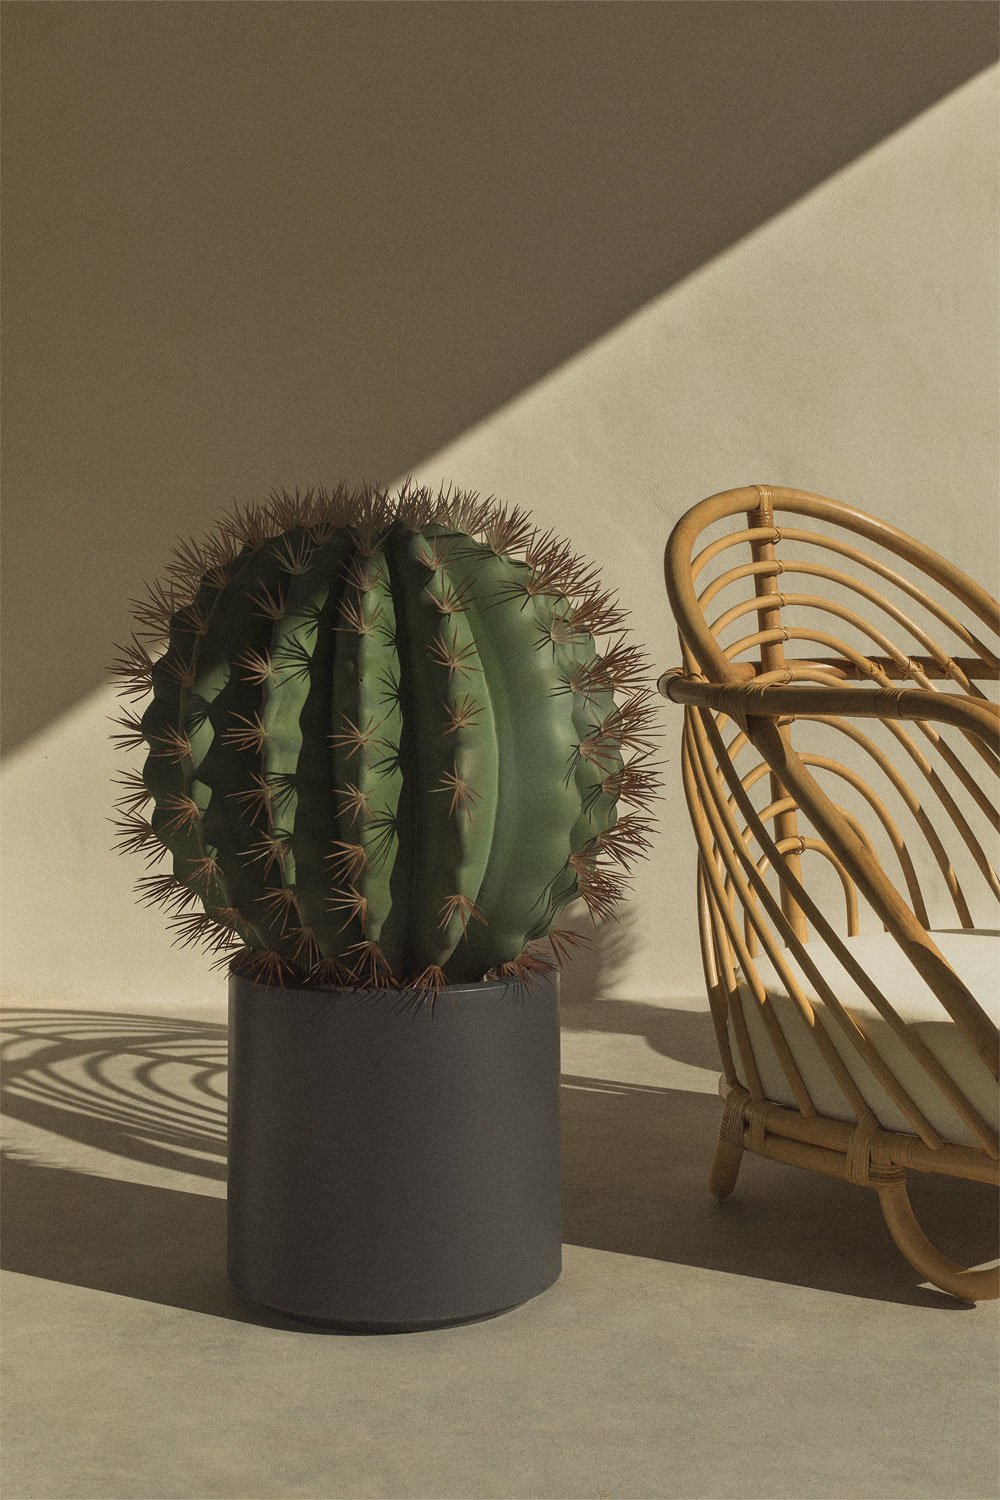 Sztuczny kaktus Ferocactus, obrazek w galerii 1